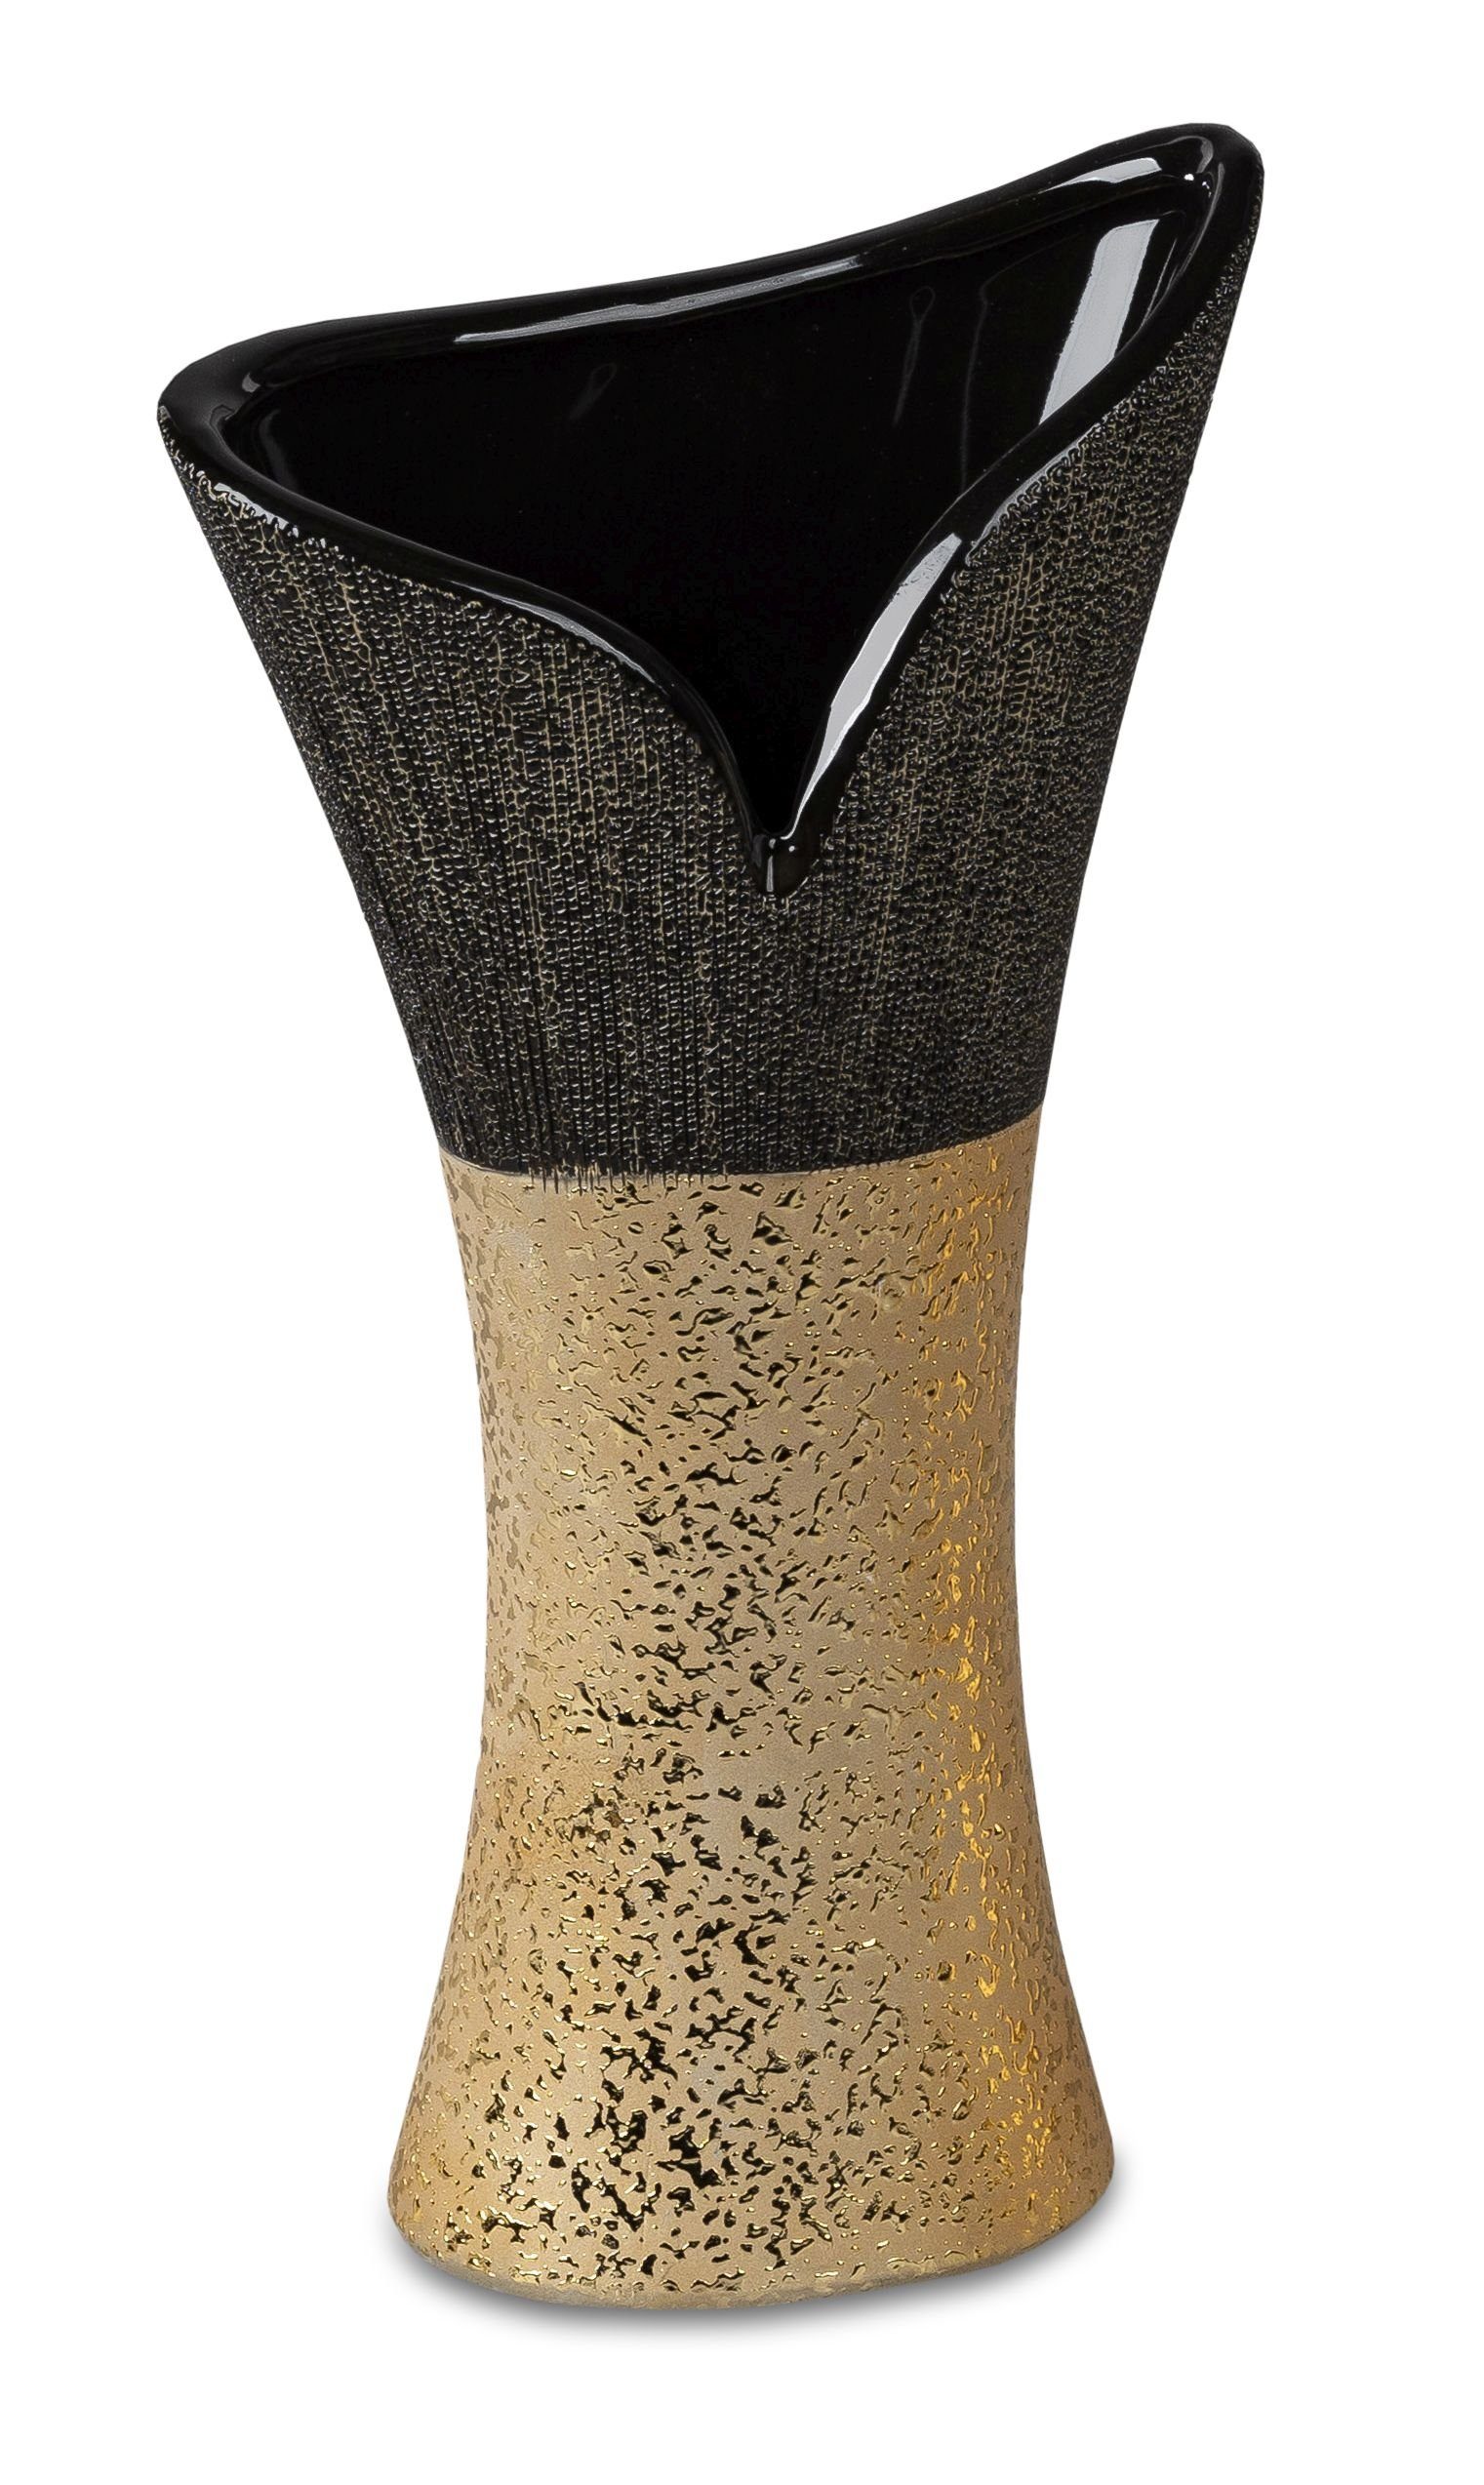 Small-Preis Dekovase Formano Vase in schwarz - gold in verschiedenen Varianten, aus Keramik